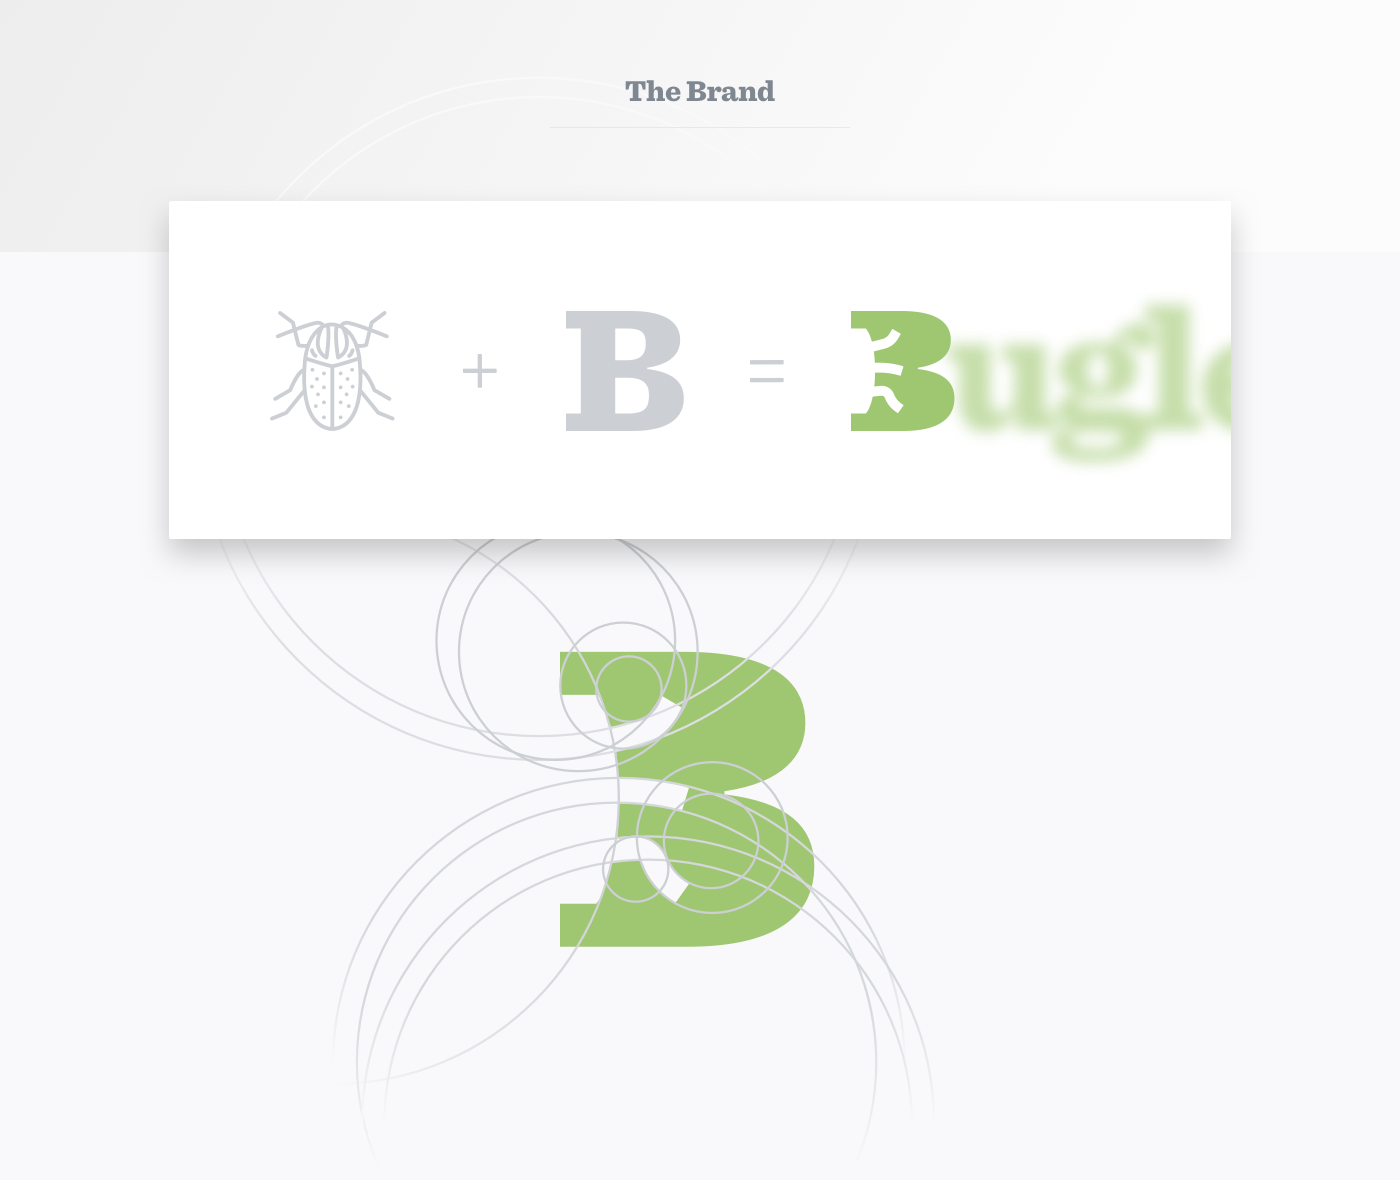 bugs illustrations flat design droids vibrant colors landing Website clean